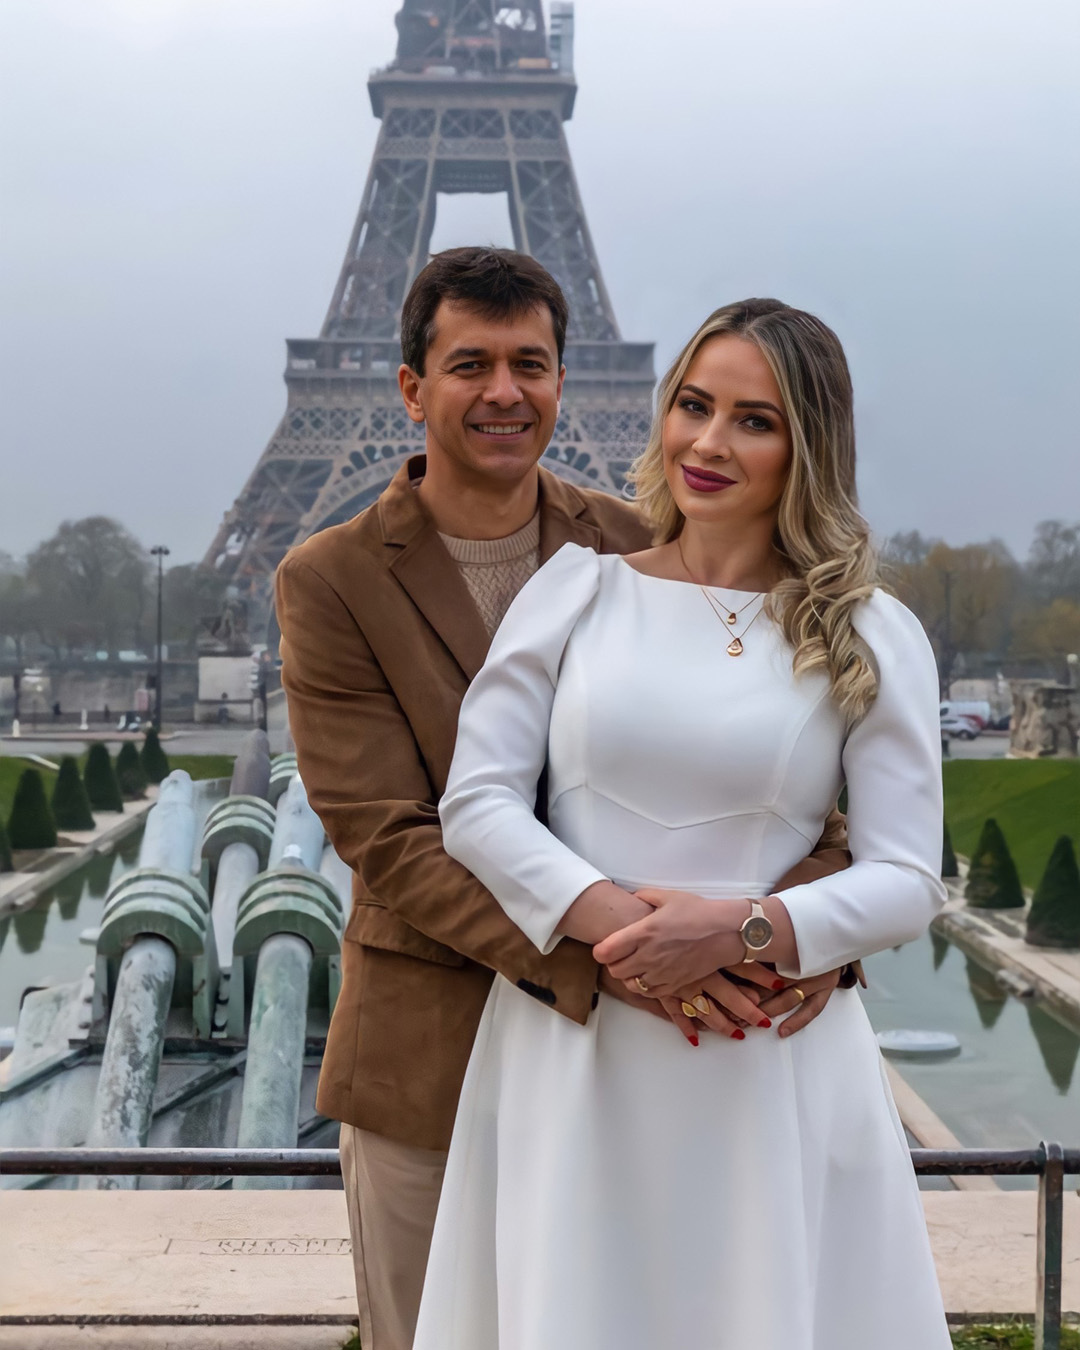 Cerimonia de casamento rm Paris de frente a torre eiffel